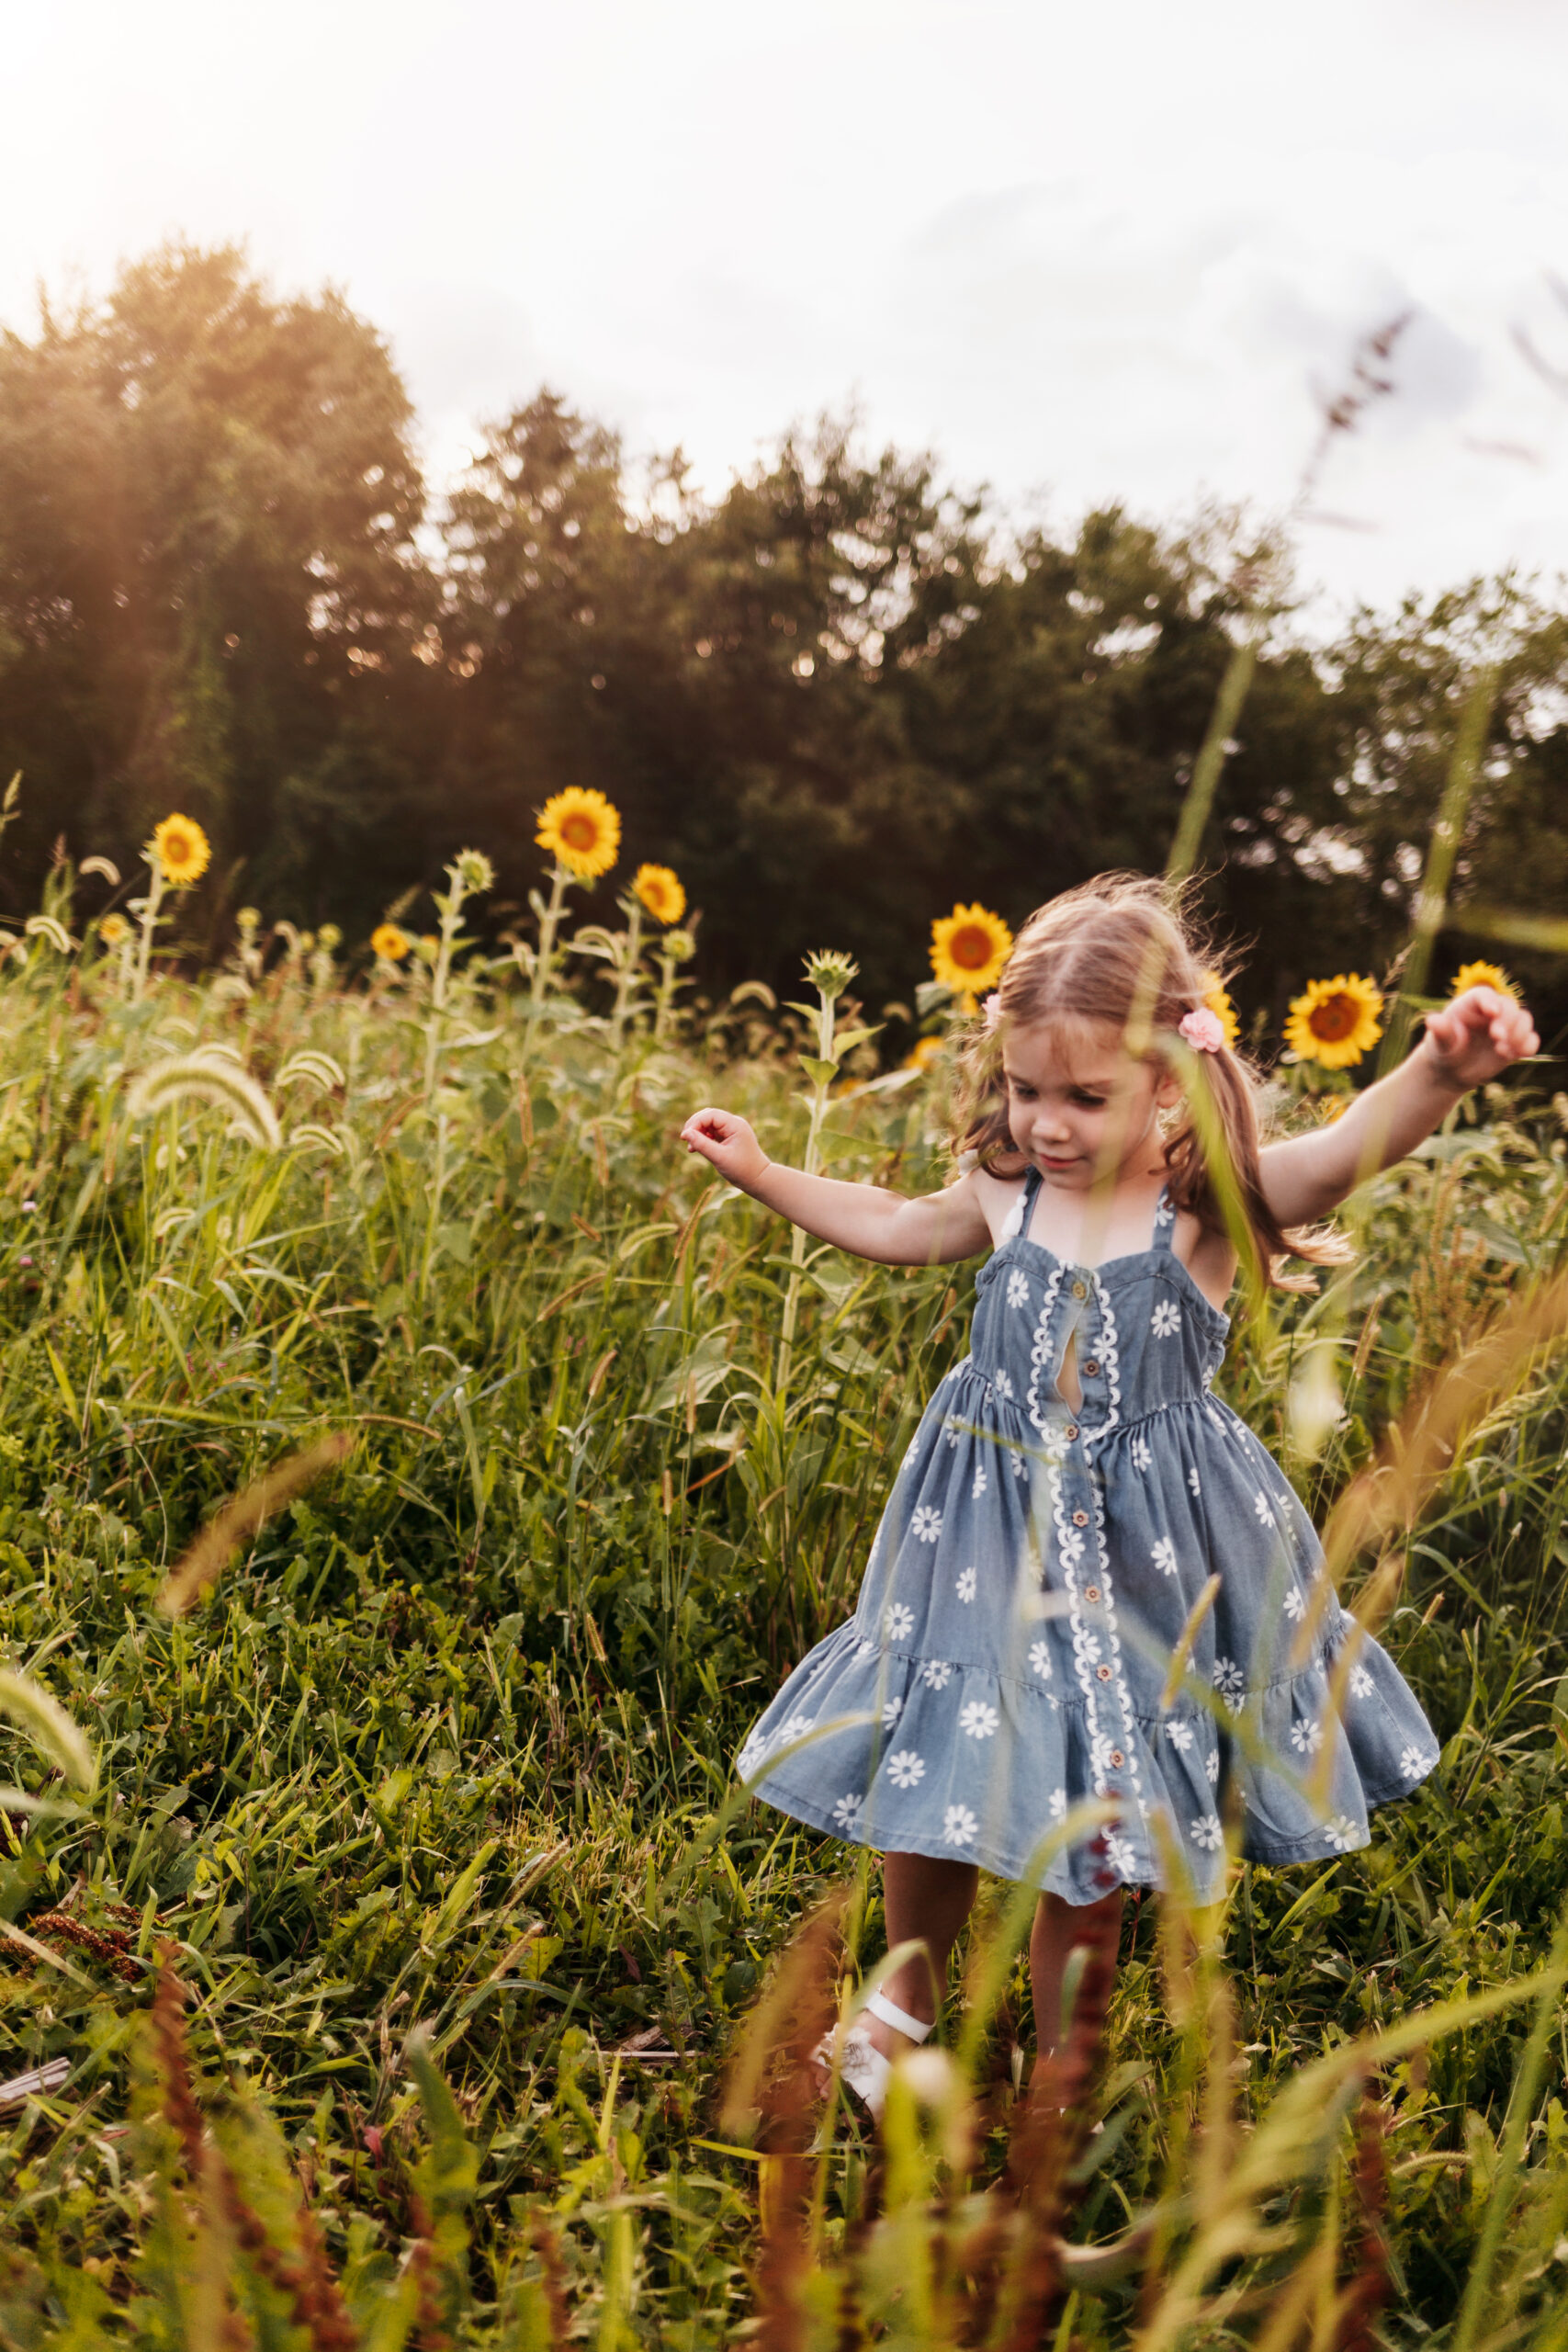 Little girl dancing in sunflower field in a blue dress